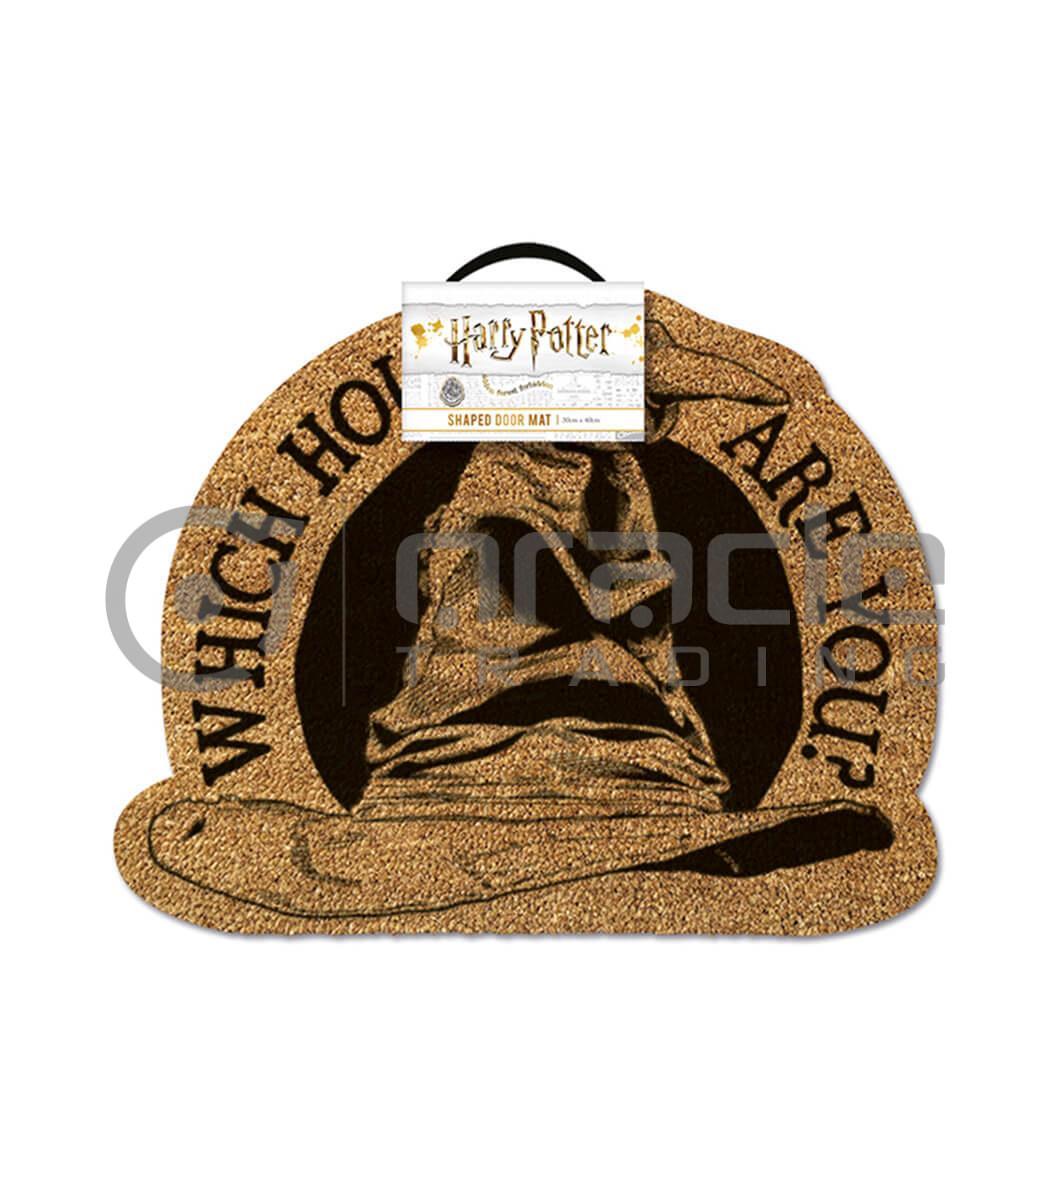 Harry Potter Doormat - Sorting Hat (Shaped)